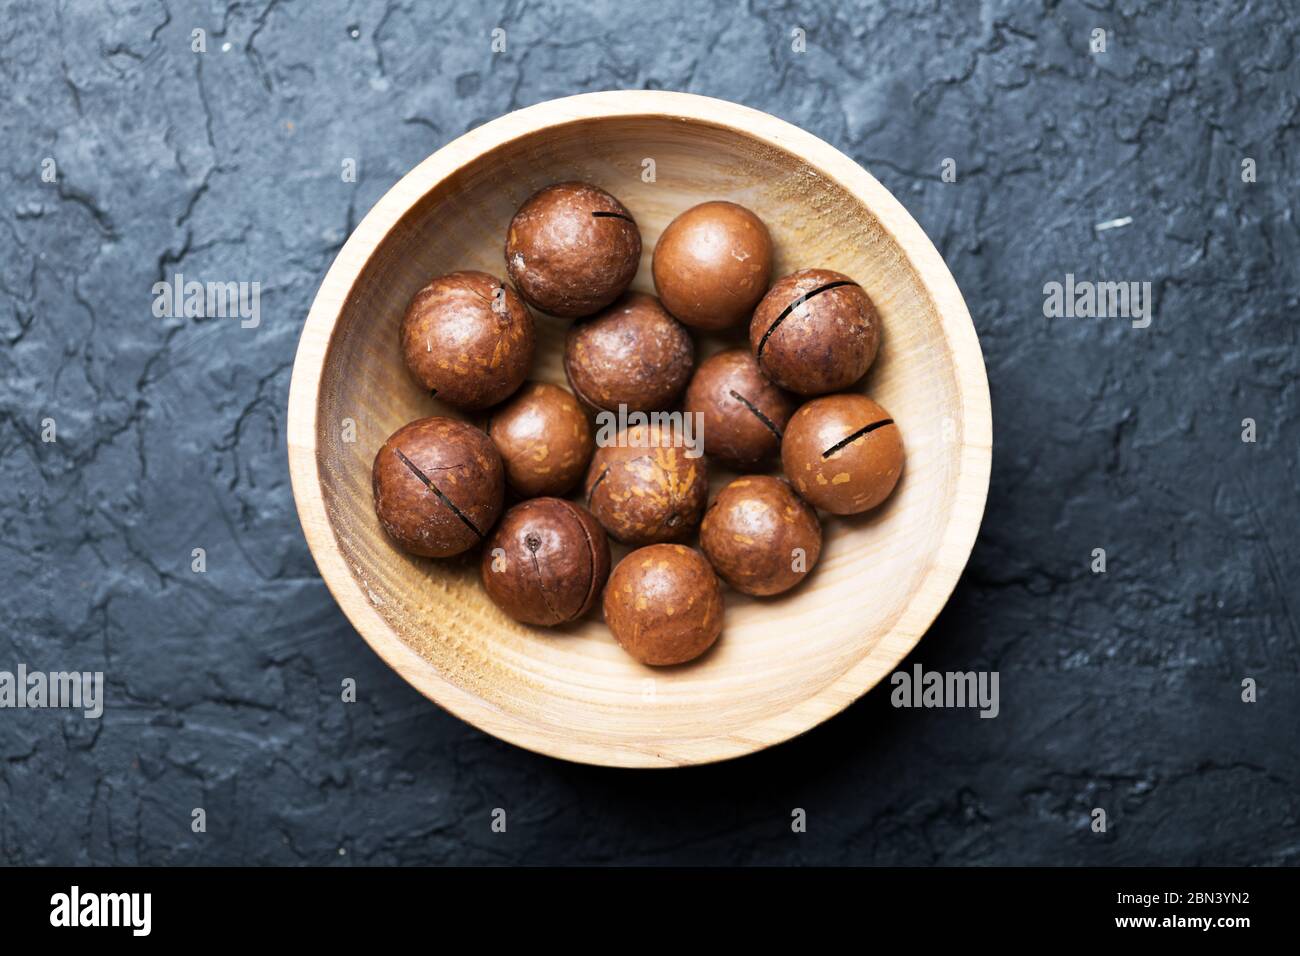 Noix de macadamia biologiques séchées dans un bol en bois. Prise de vue macro studio. Fond noir en béton Banque D'Images